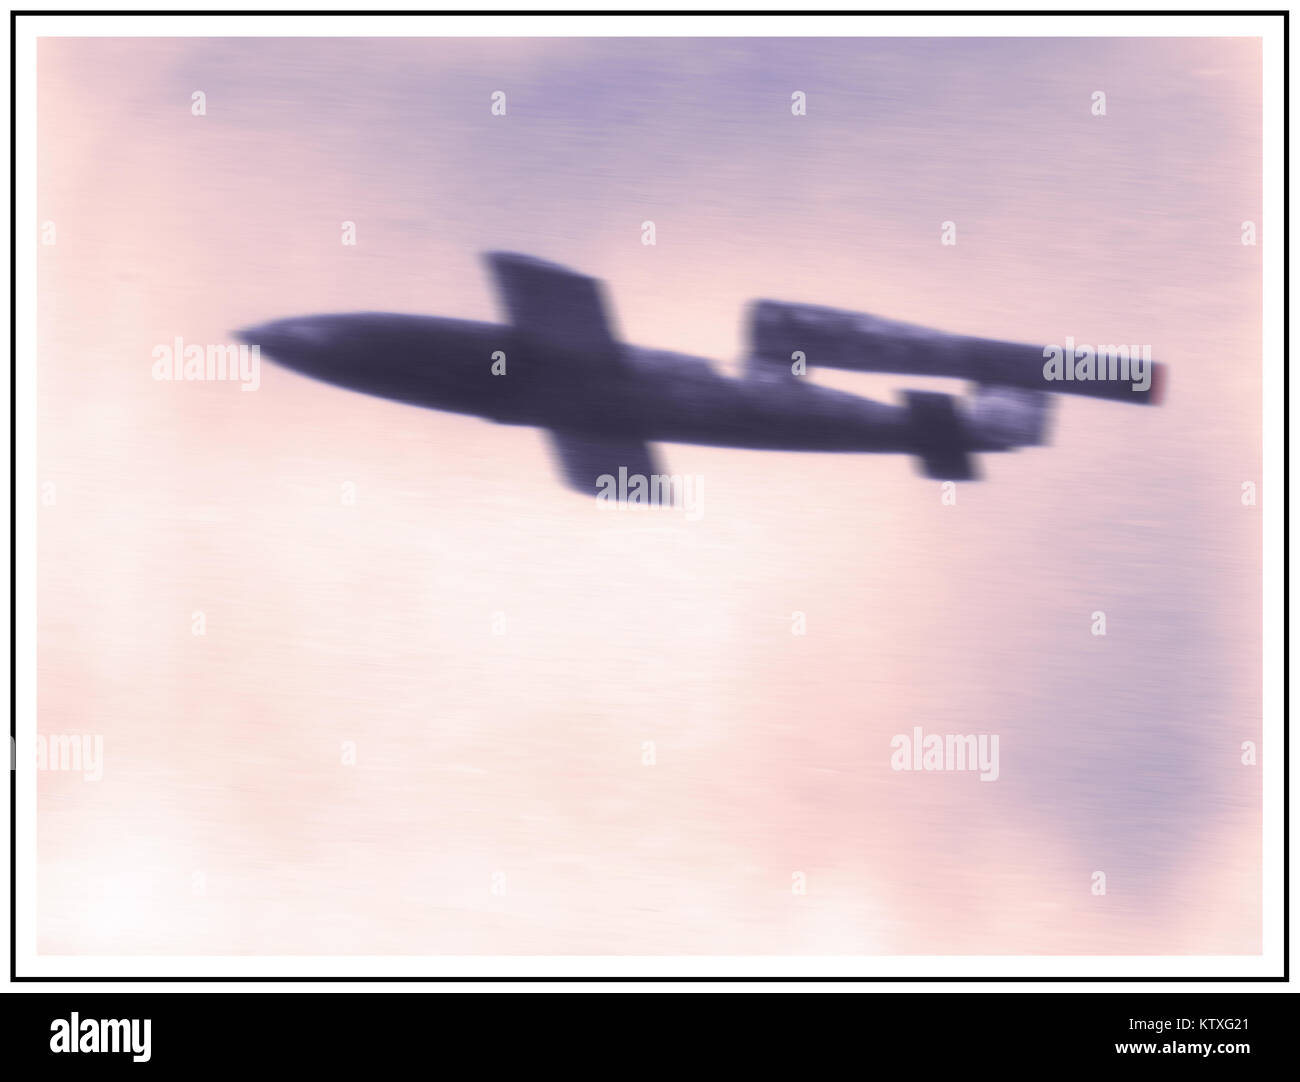 Bomba volante V-1 1944 terror indiscriminado arma utilizada por la Alemania Nazi para bombardear Londres civil Foto de stock